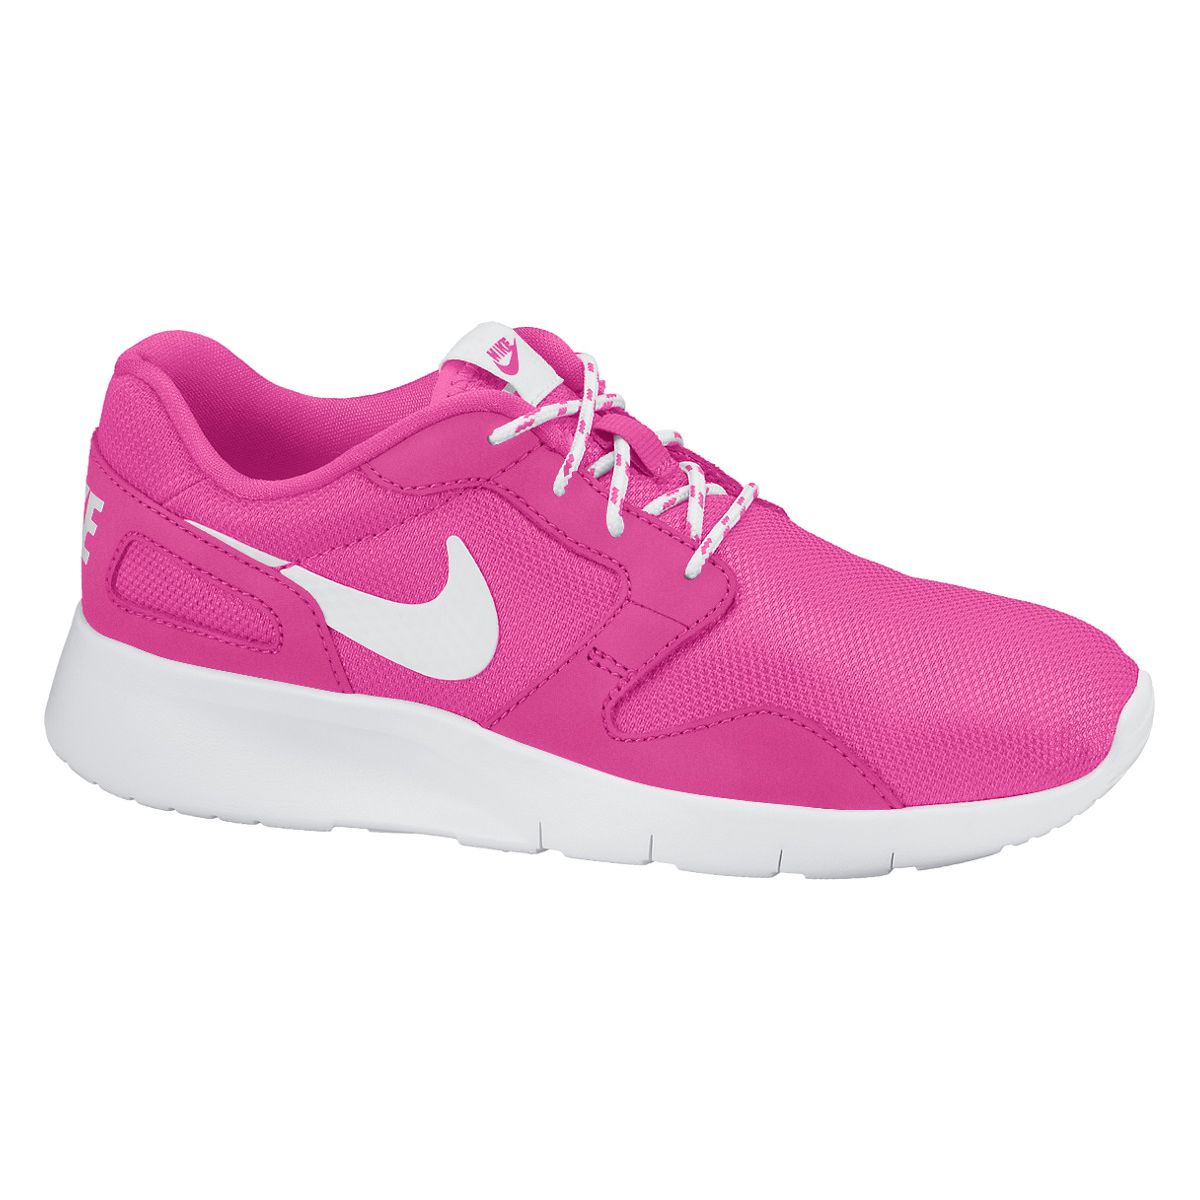 Nike Kaishi (GS) Girls' Sports Shoes 705492-600